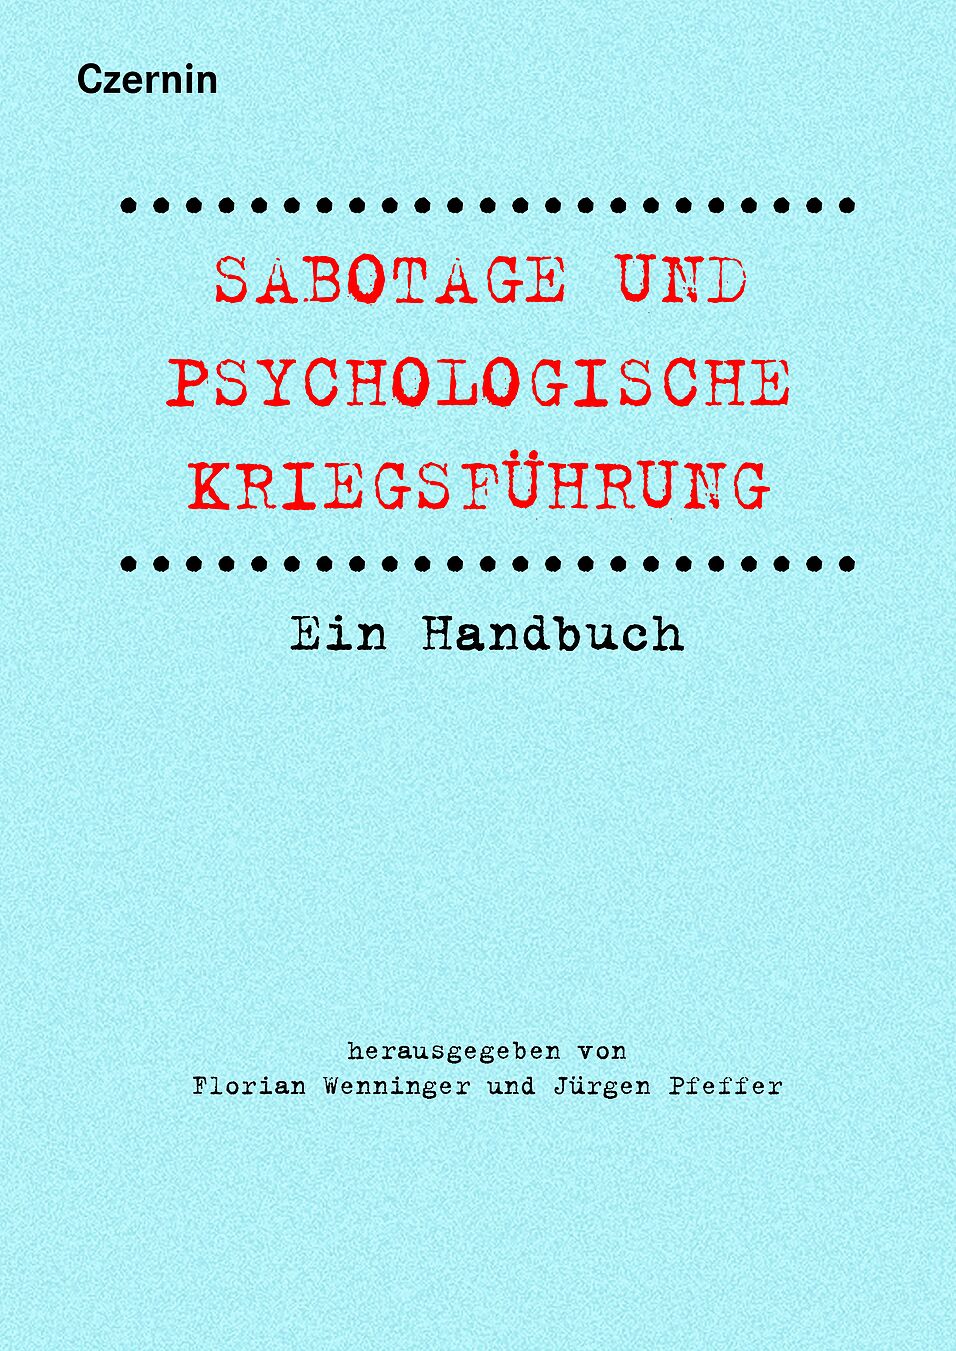 Buchcover von "Sabotage und psychologische Kriegsführung"